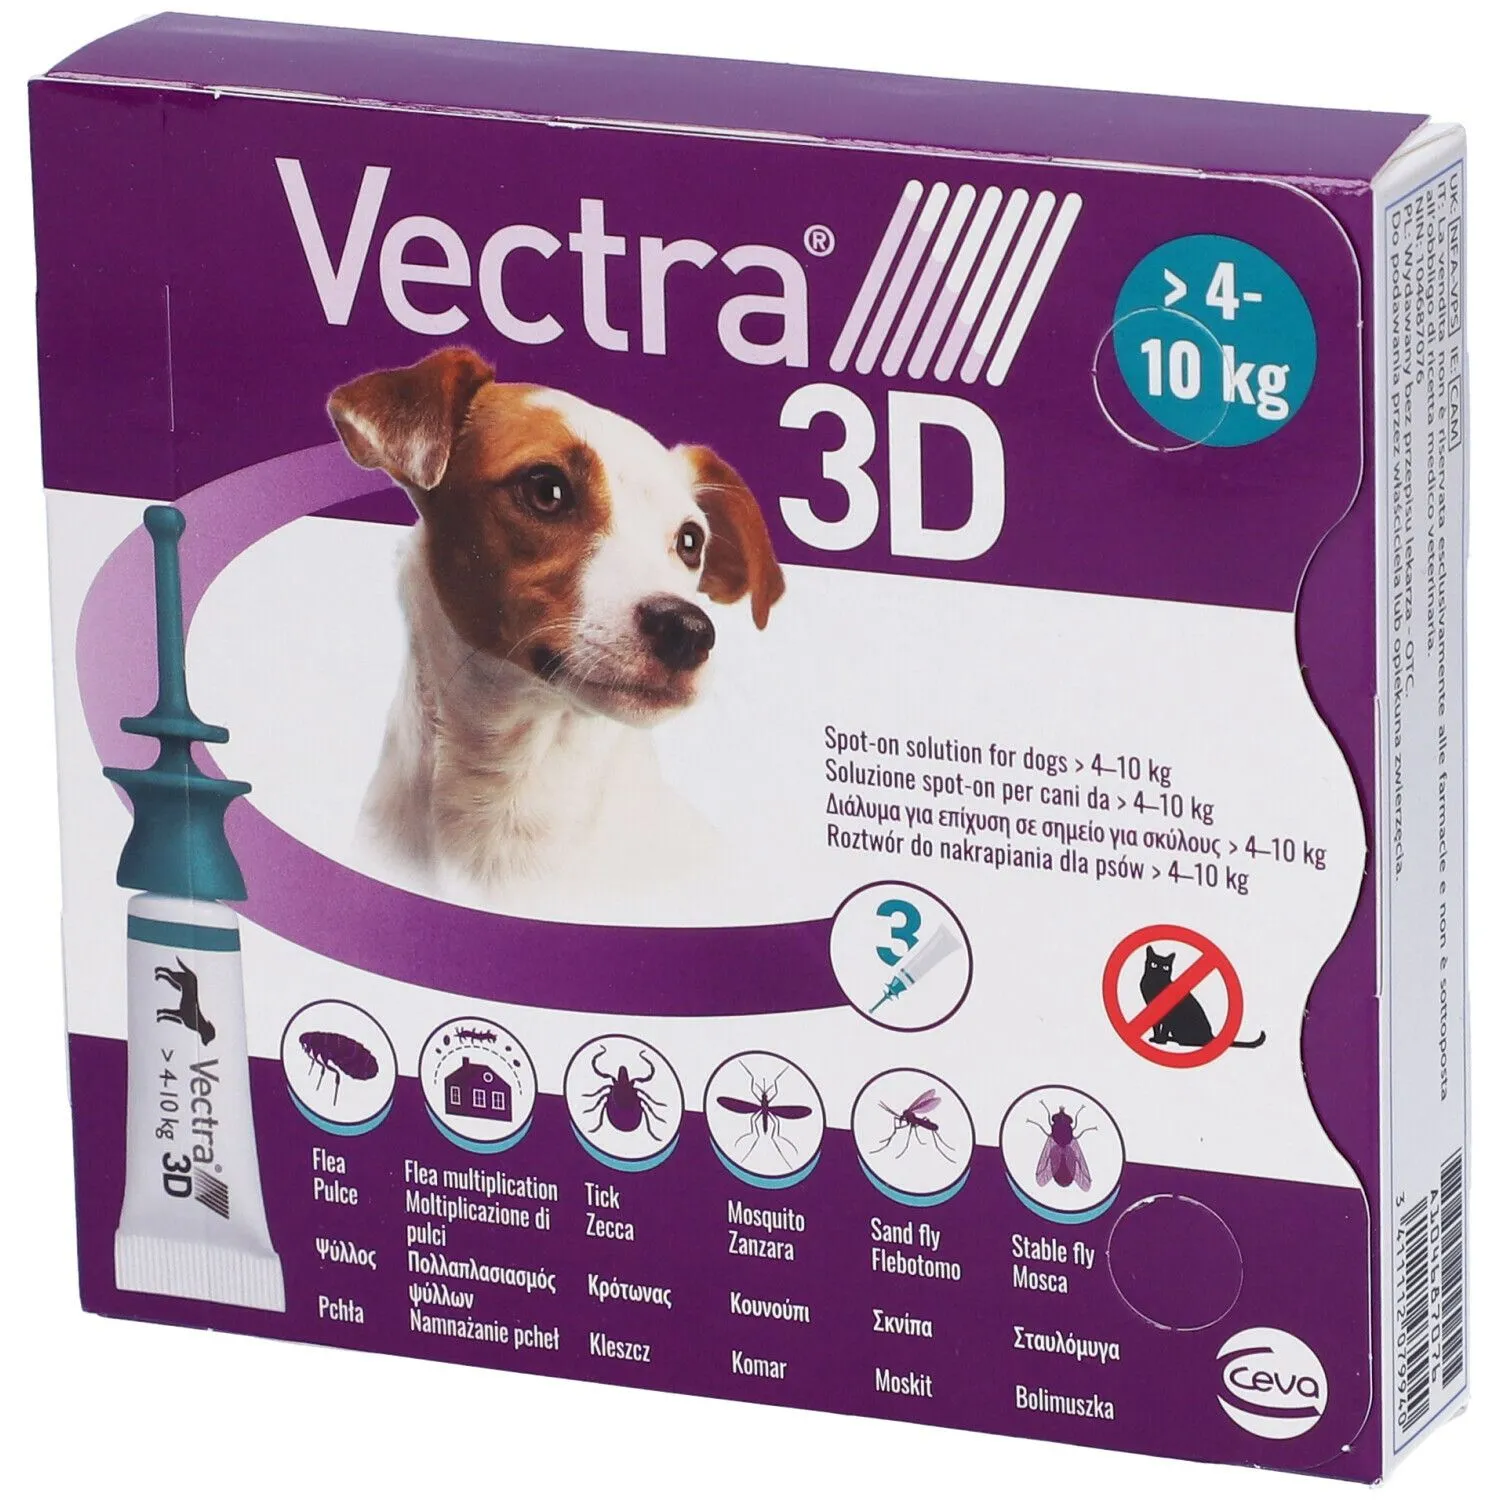 Vectra 3D 3 Pipette Verde 410 Kg 